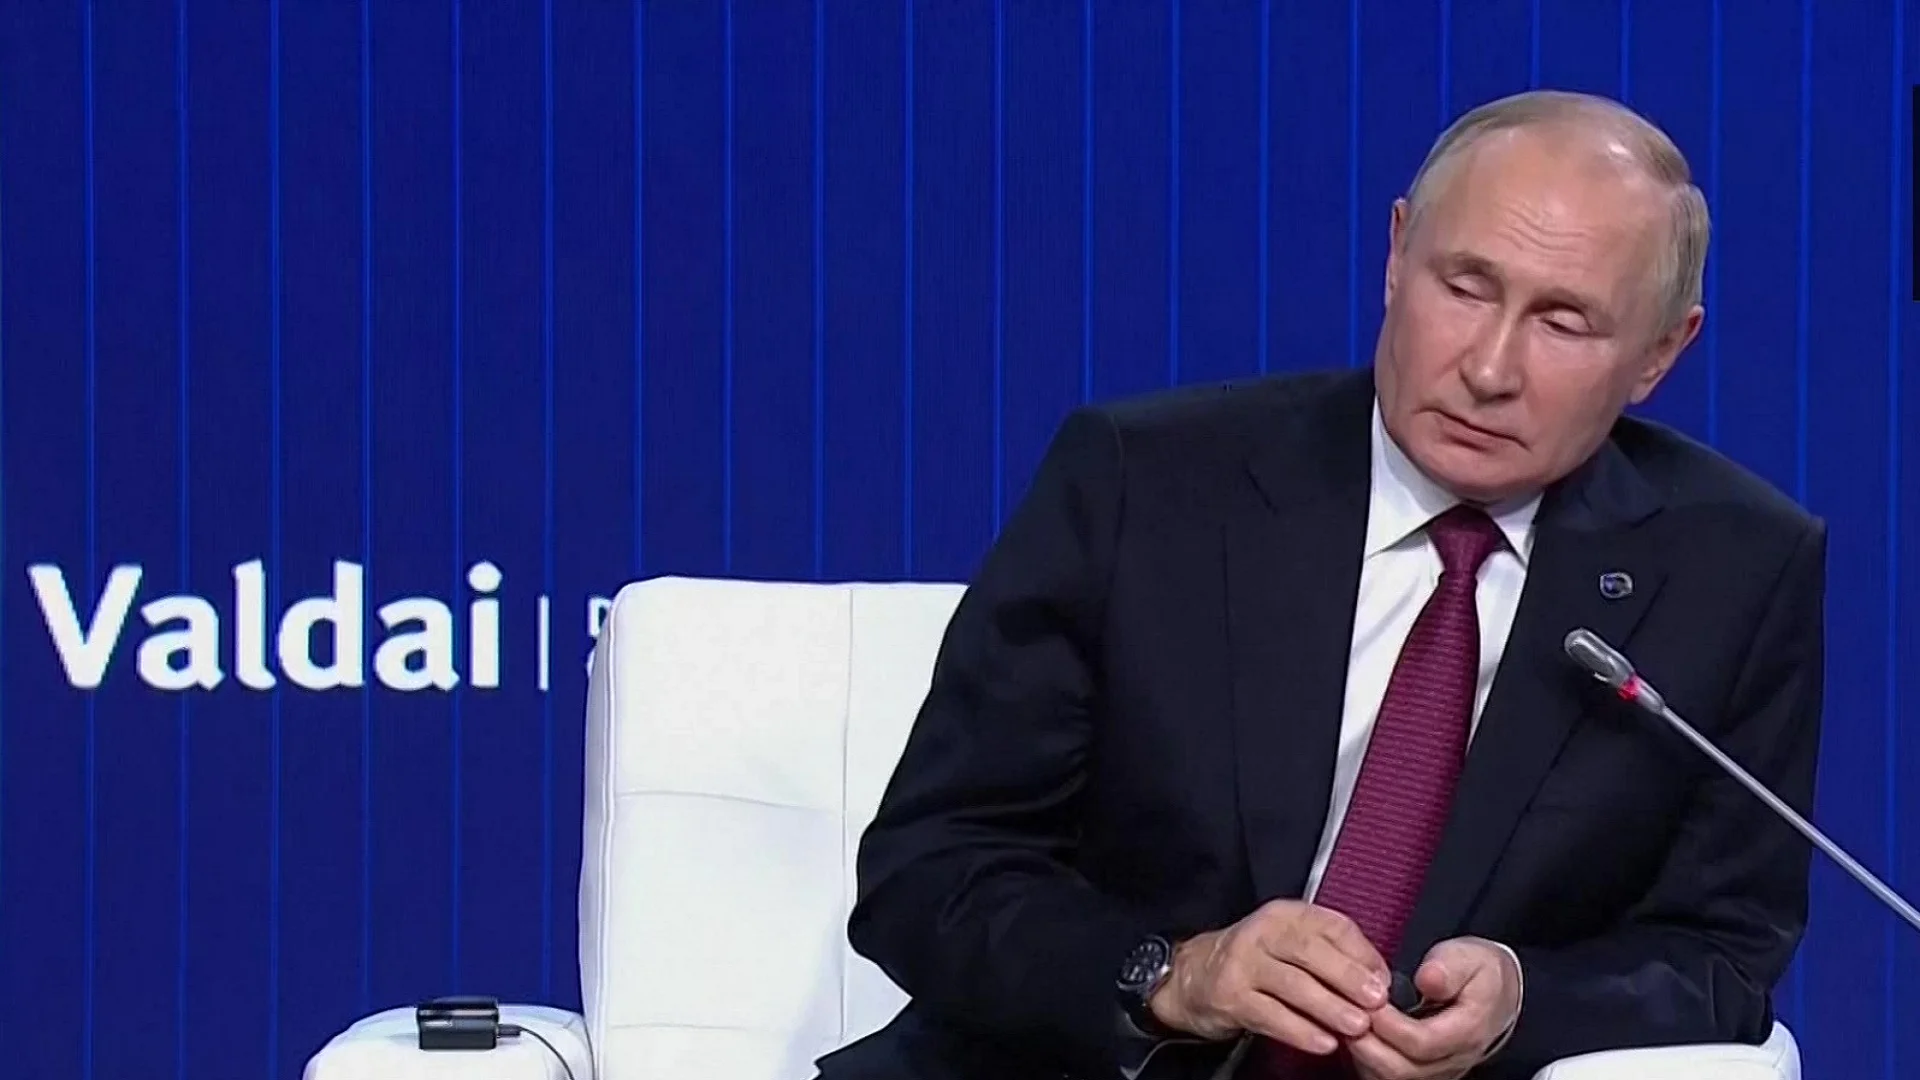 रूसी राष्ट्रपति पुतिन बीमार! बैठक में असहज हुए, थपथपाने लगे अपने पैर